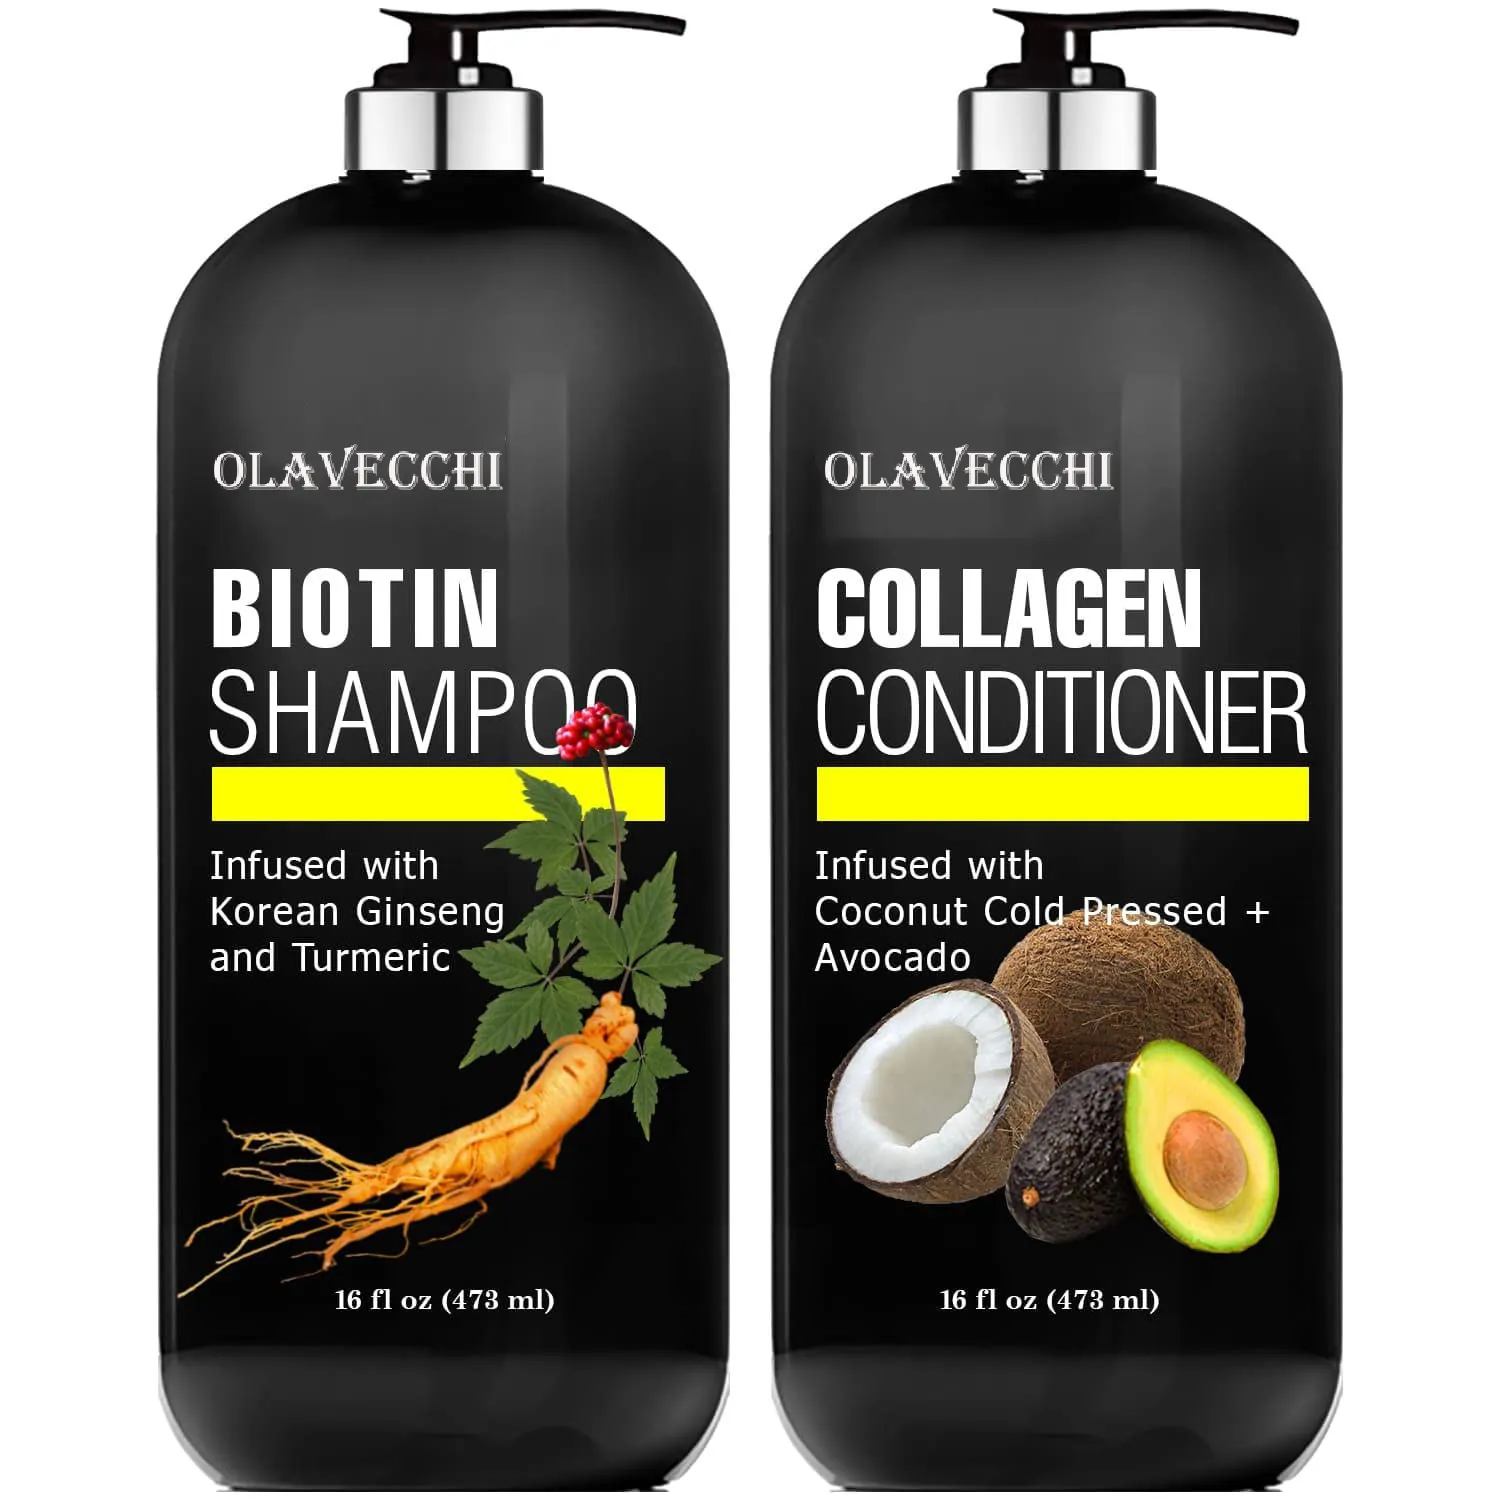 Acondicionador de etiqueta privada para combatir la pérdida de cabello y adelgazamiento promueve el crecimiento del cabello con champú y acondicionador de colágeno de biotina de aguacate y coco